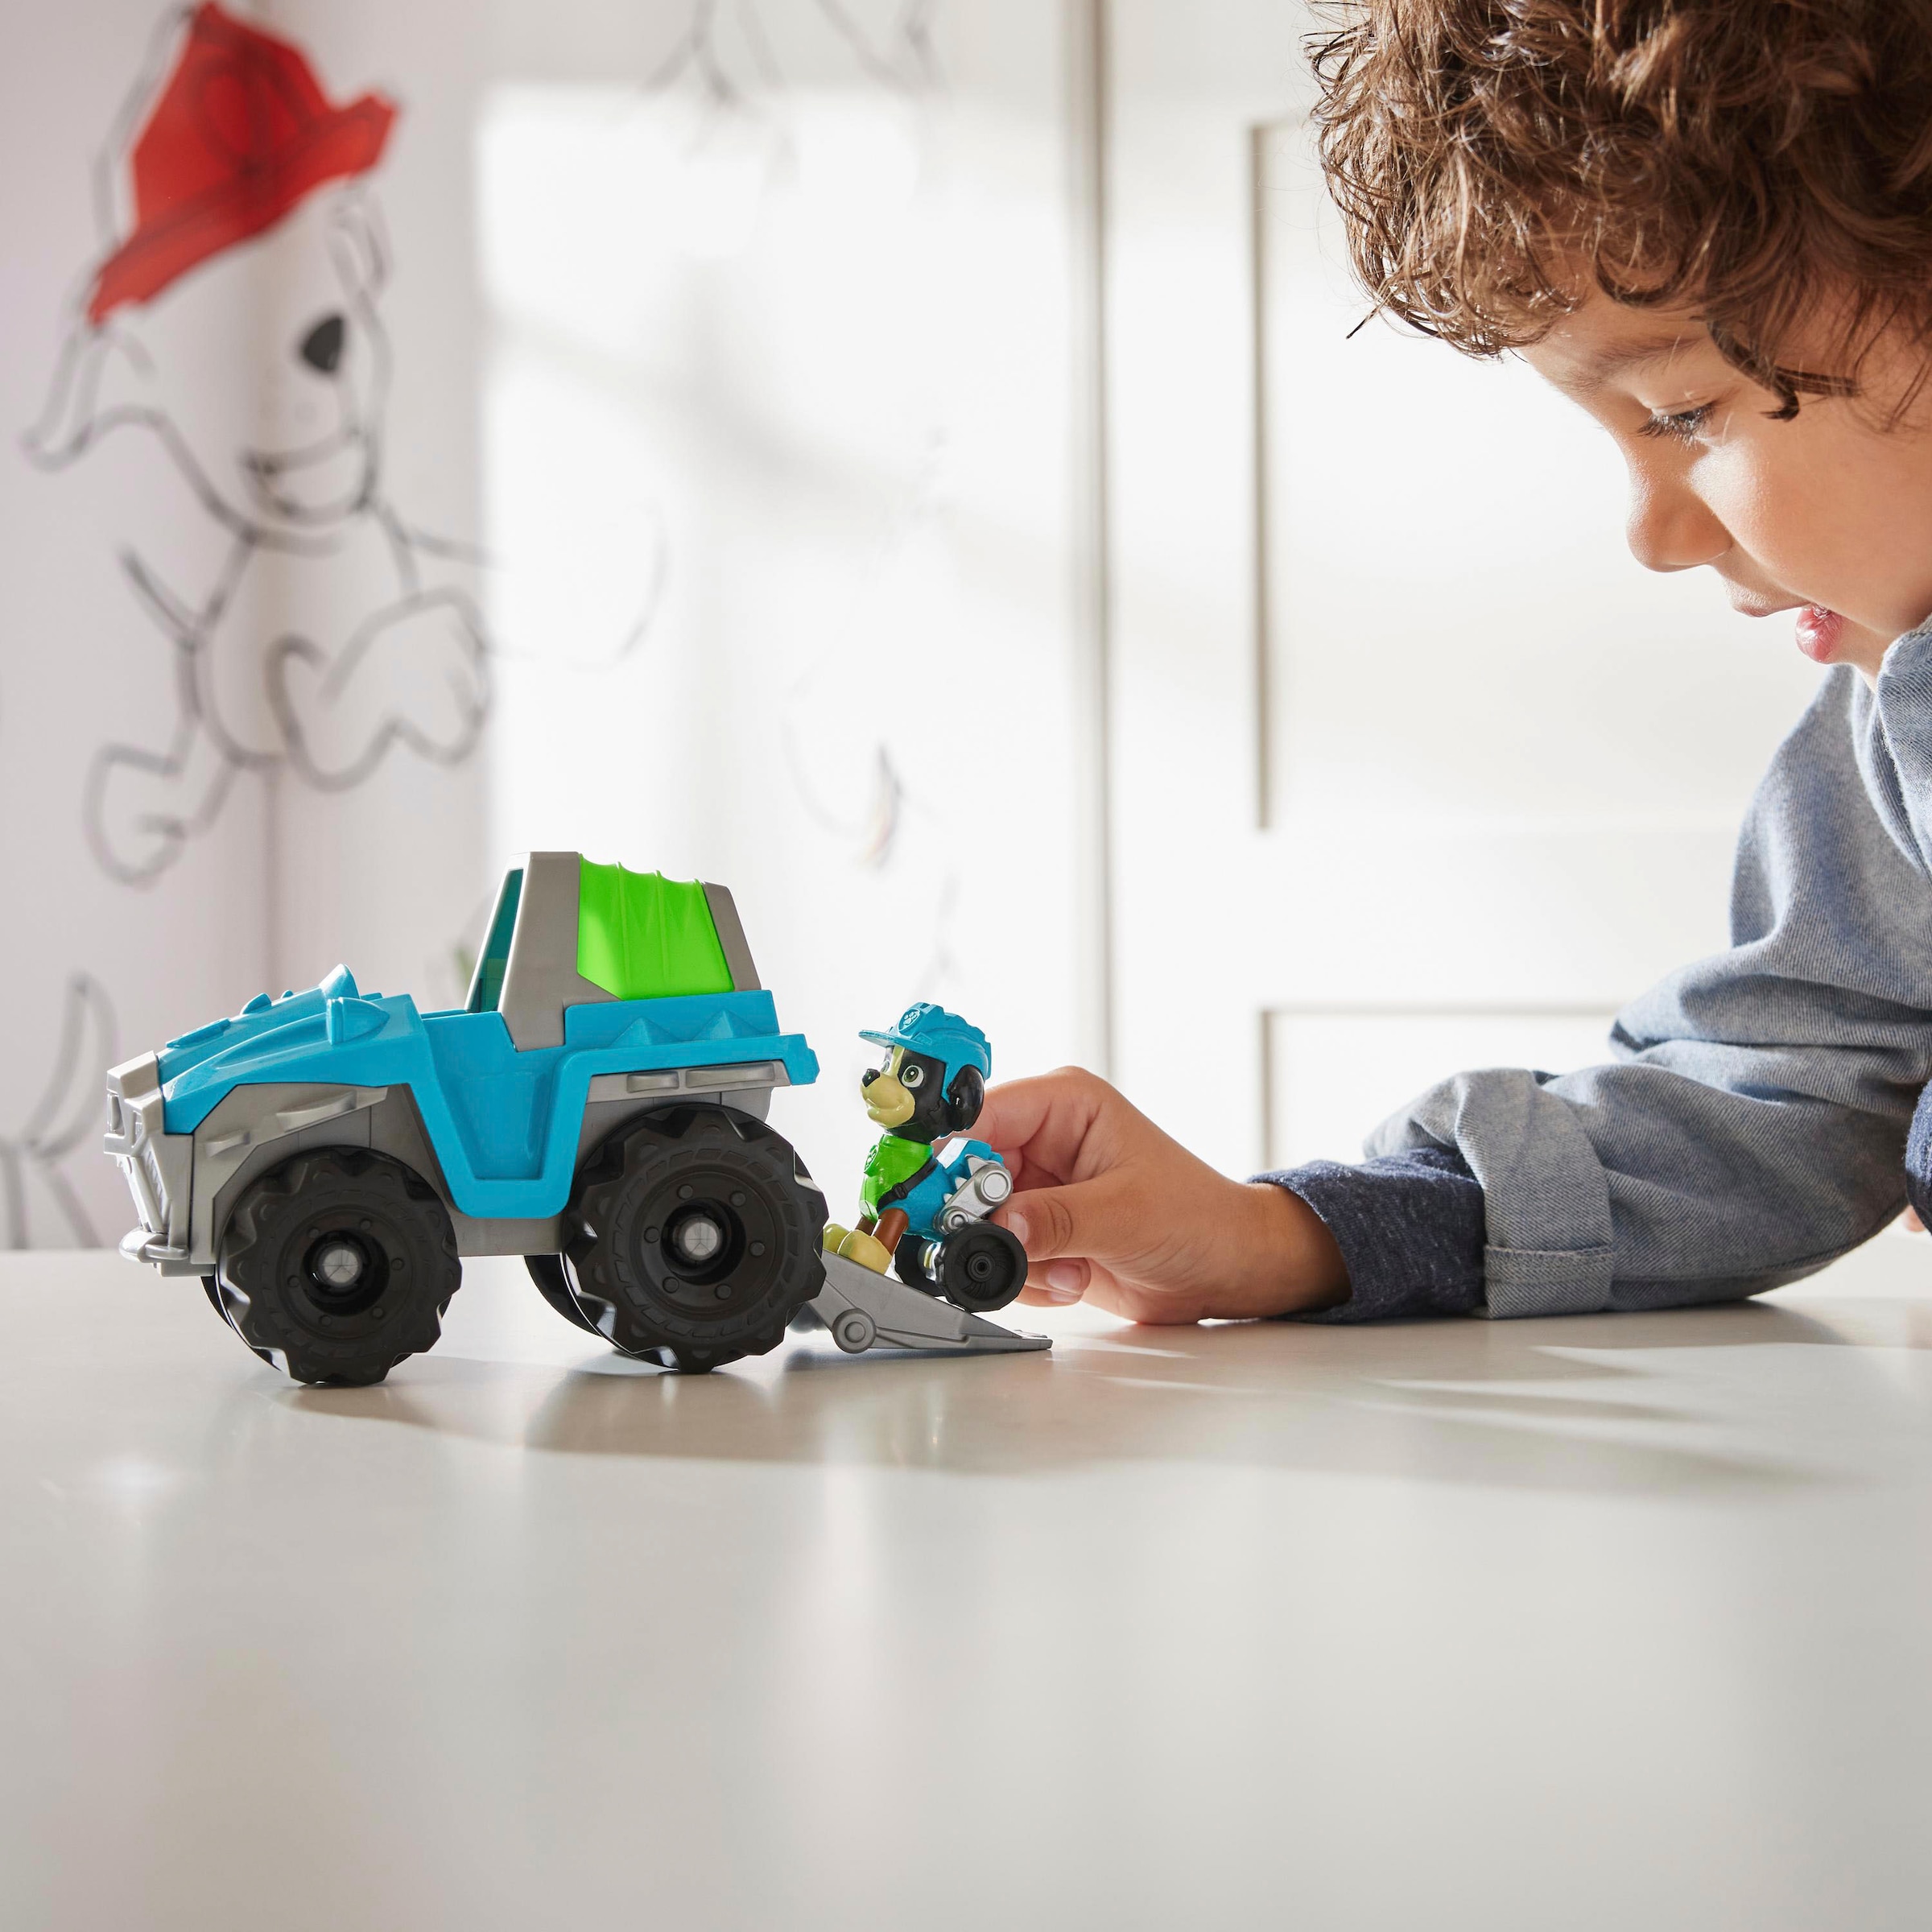 Spin Master Spielzeug-Auto »Paw Patrol - Sust. Basic Vehicle Rex«, zum Teil aus recycelten Material